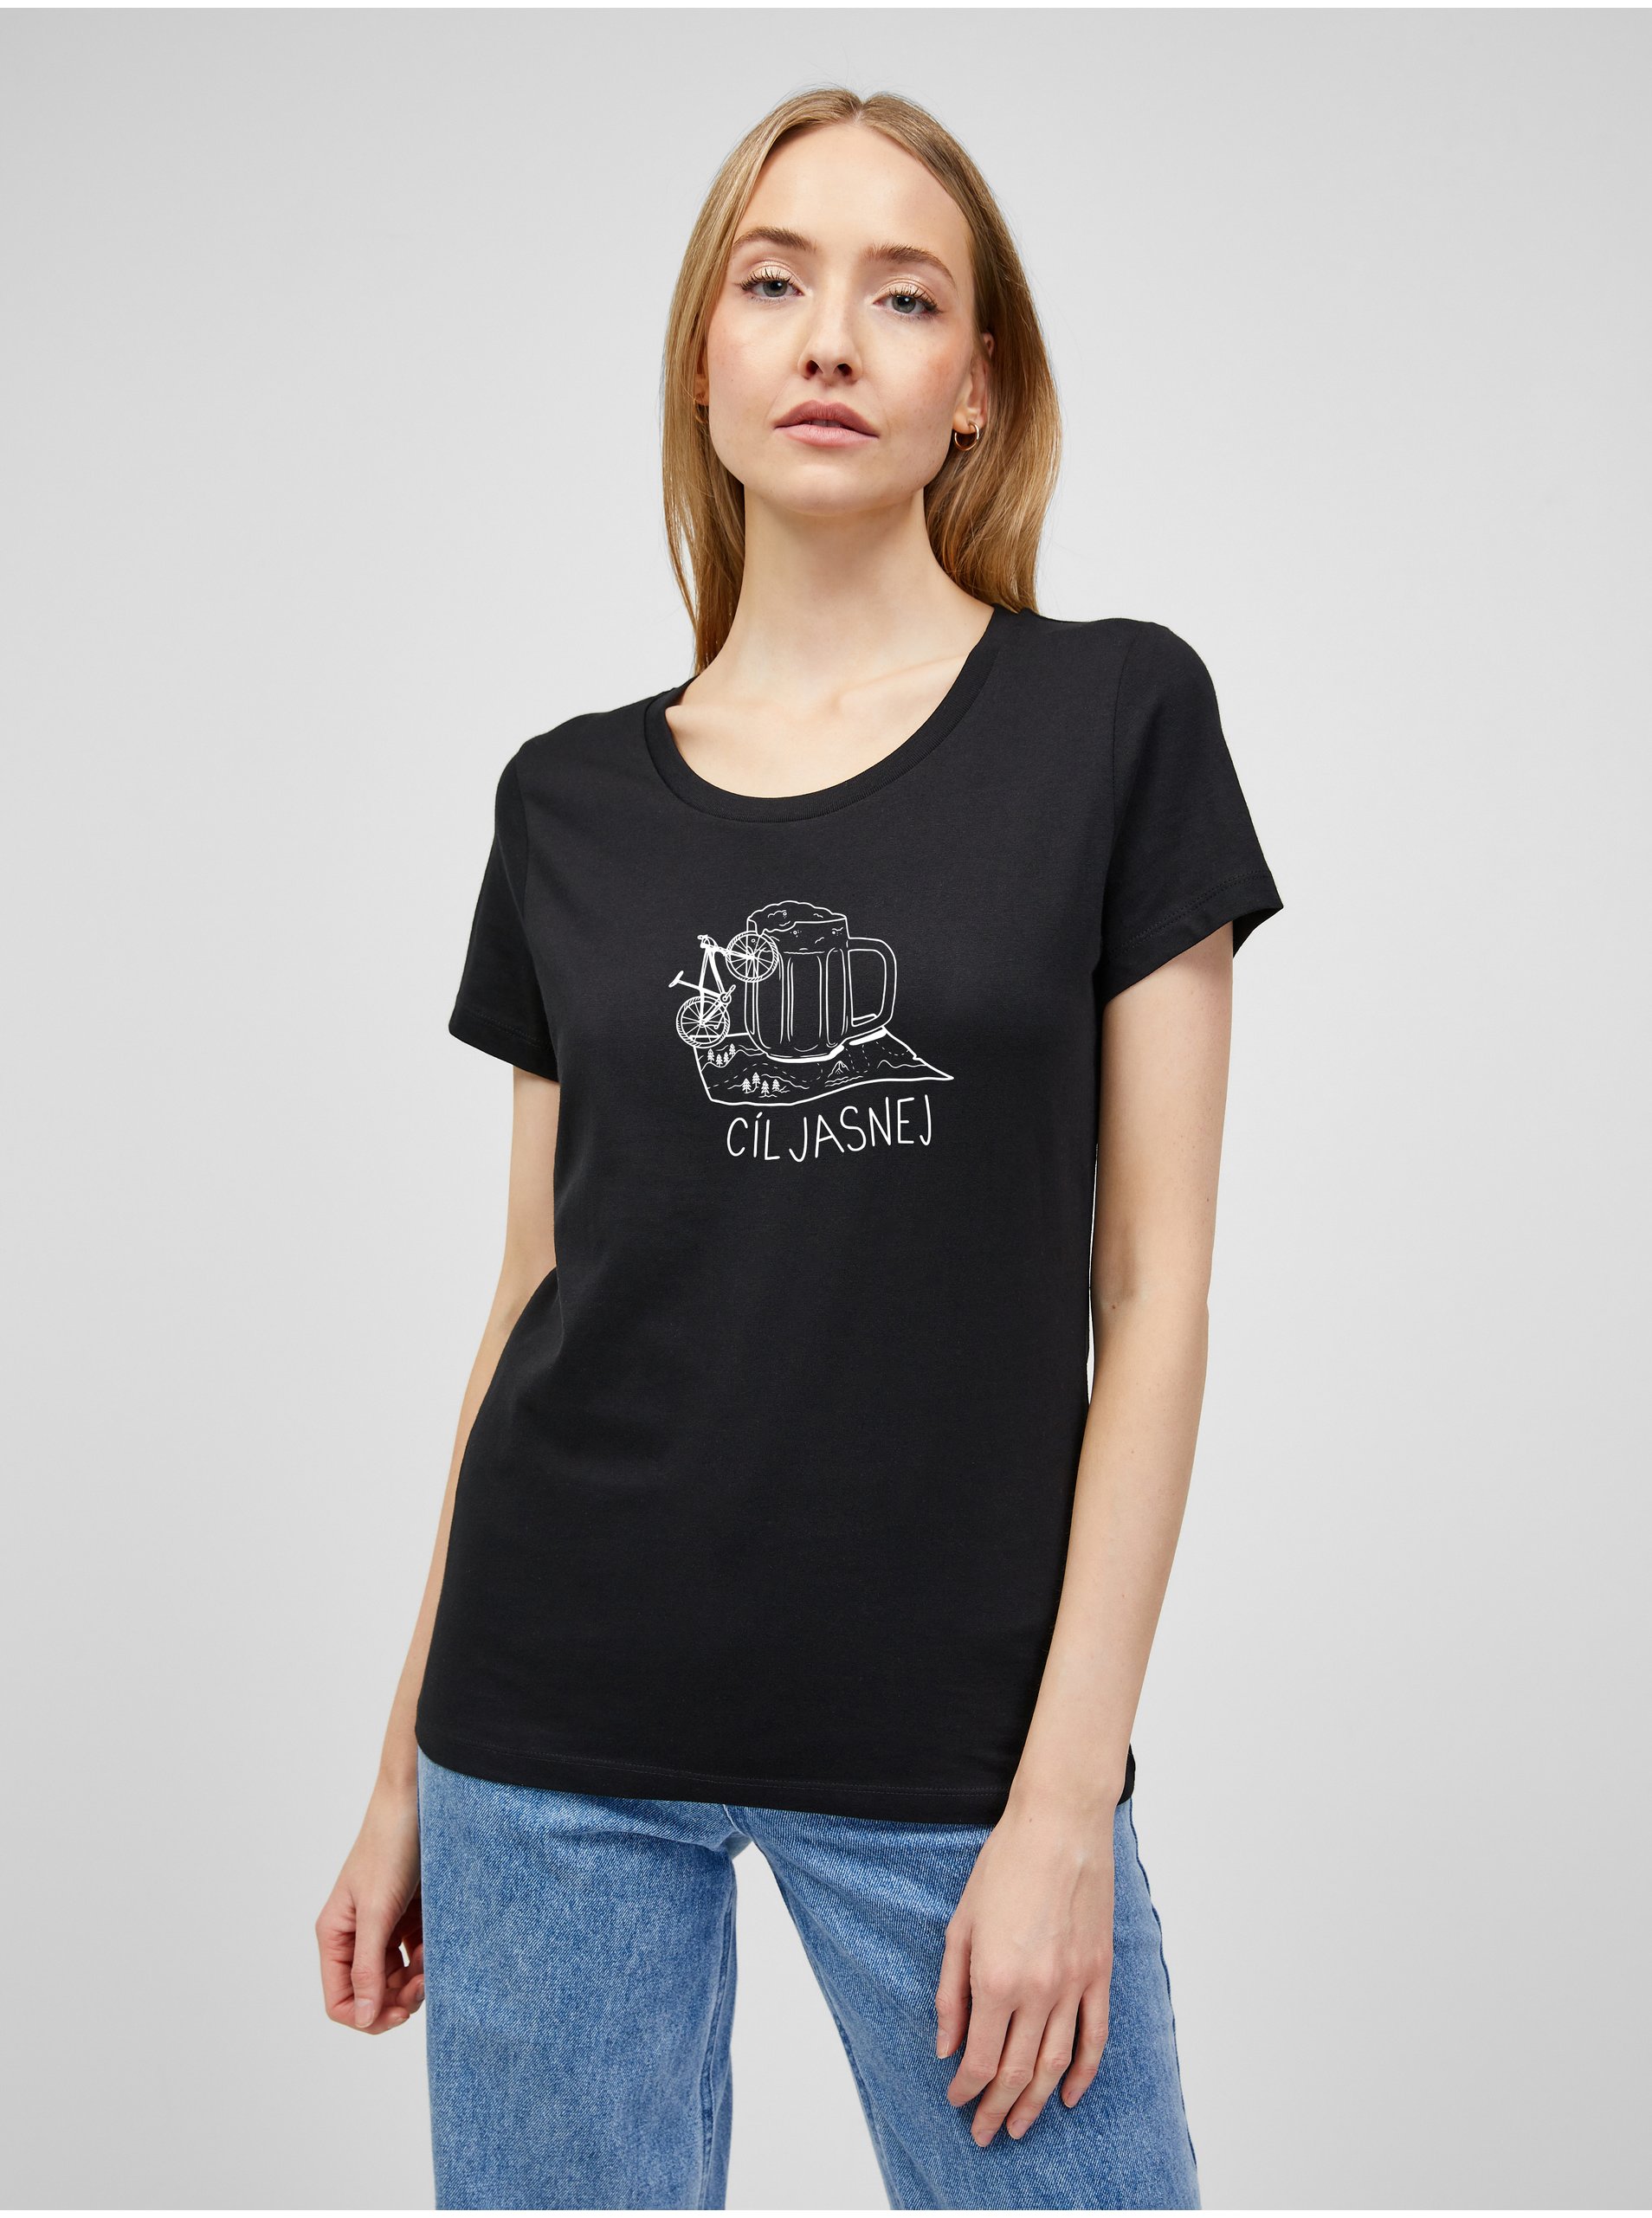 E-shop Černé dámské tričko s potiskem ZOOT.Original Cíl jasnej